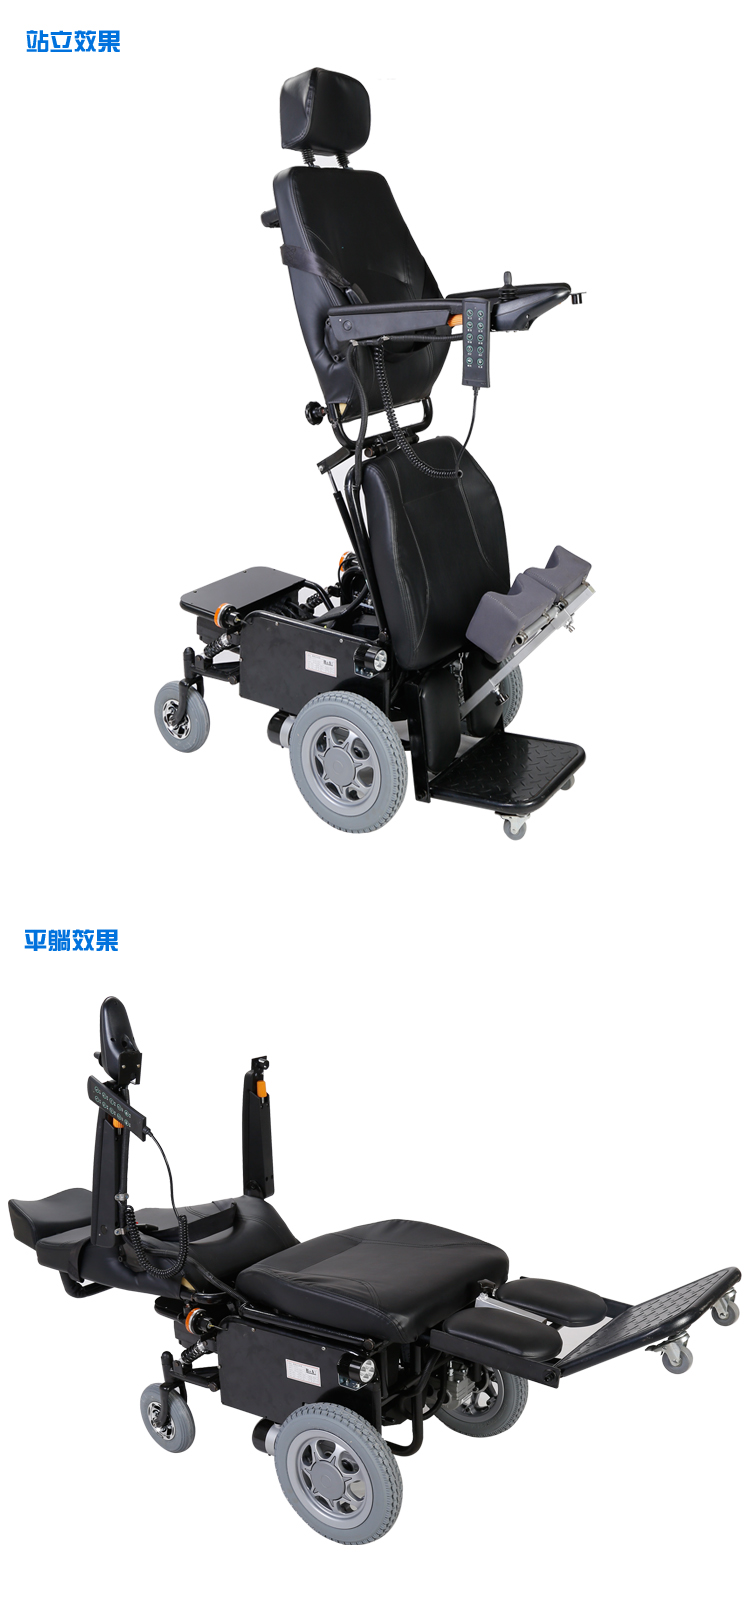 山东博奥电动多功能轮椅直销厂家老年人代步车康复锻炼残疾人轮椅